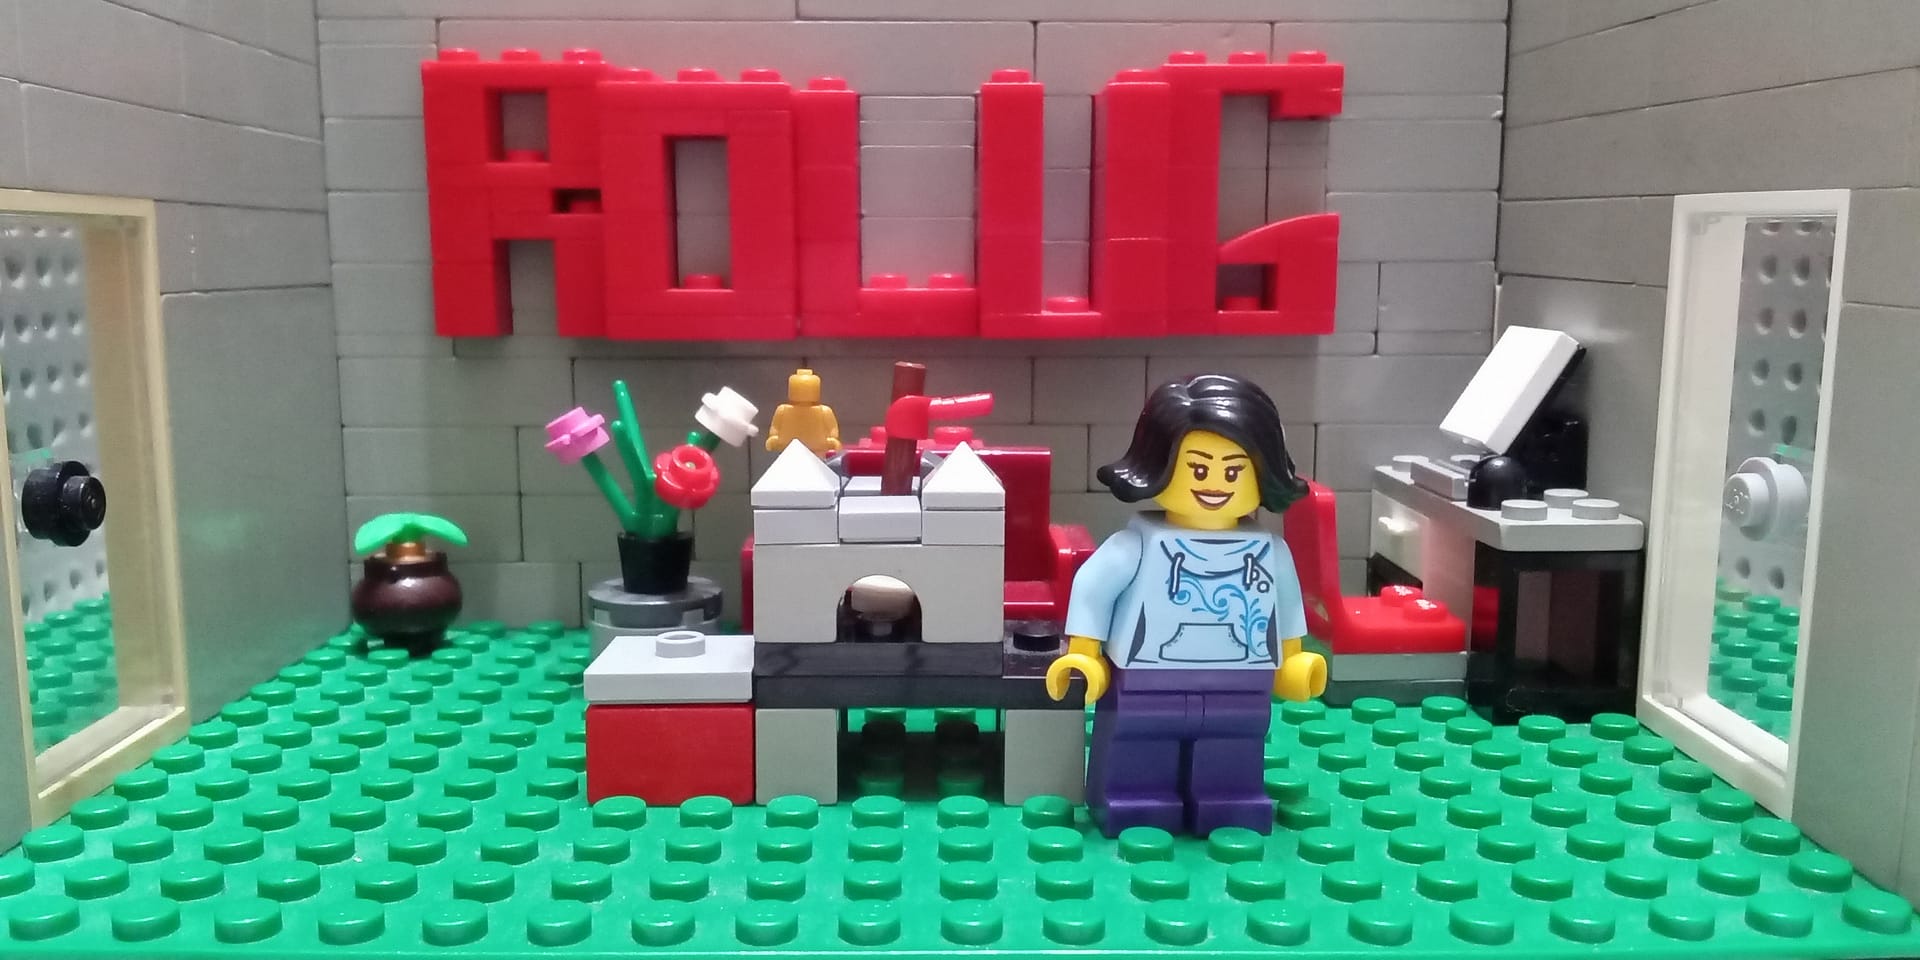 MOC-uiala torturilor 2 – Creatia 1: Bricky construind un set LEGO by ALEX TATAR